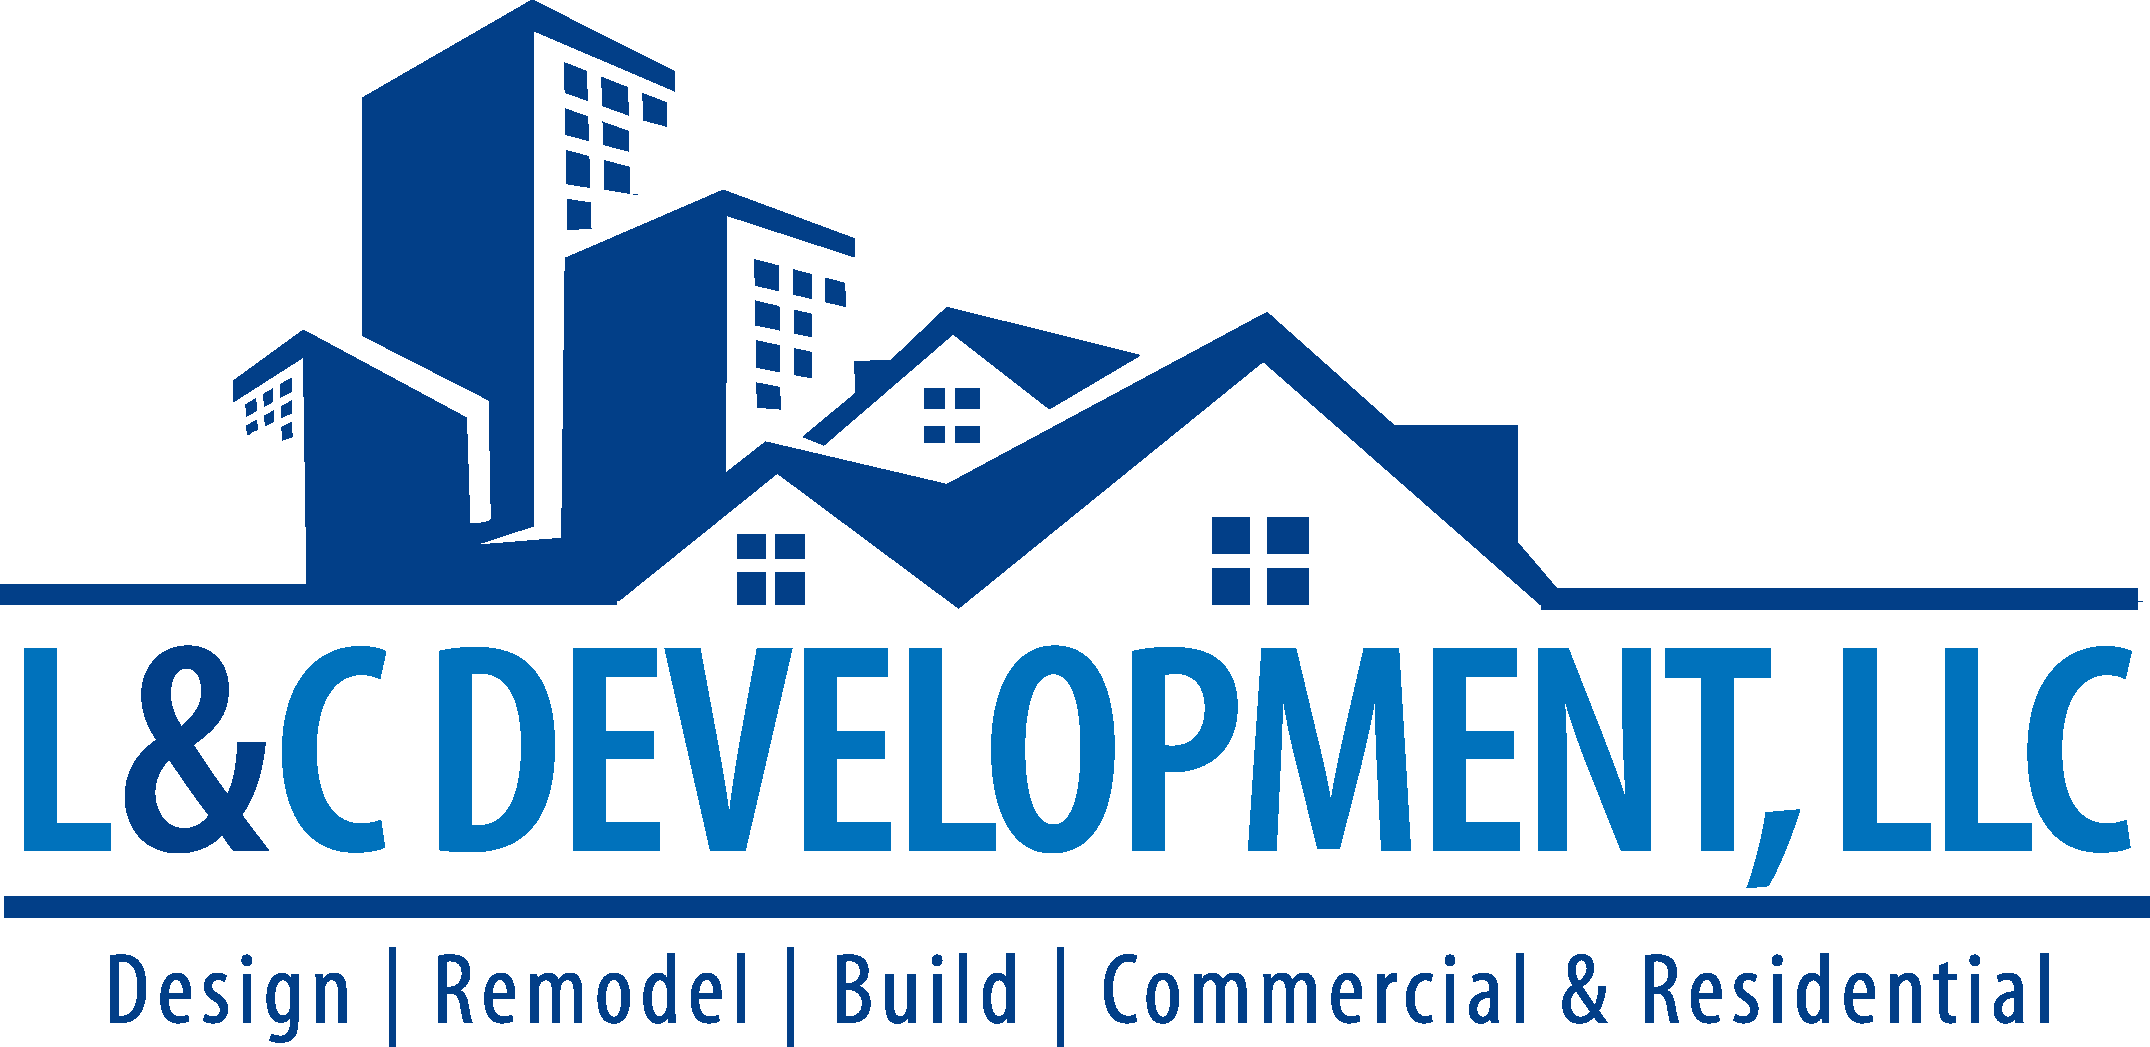 L&amp;C Development, LLC